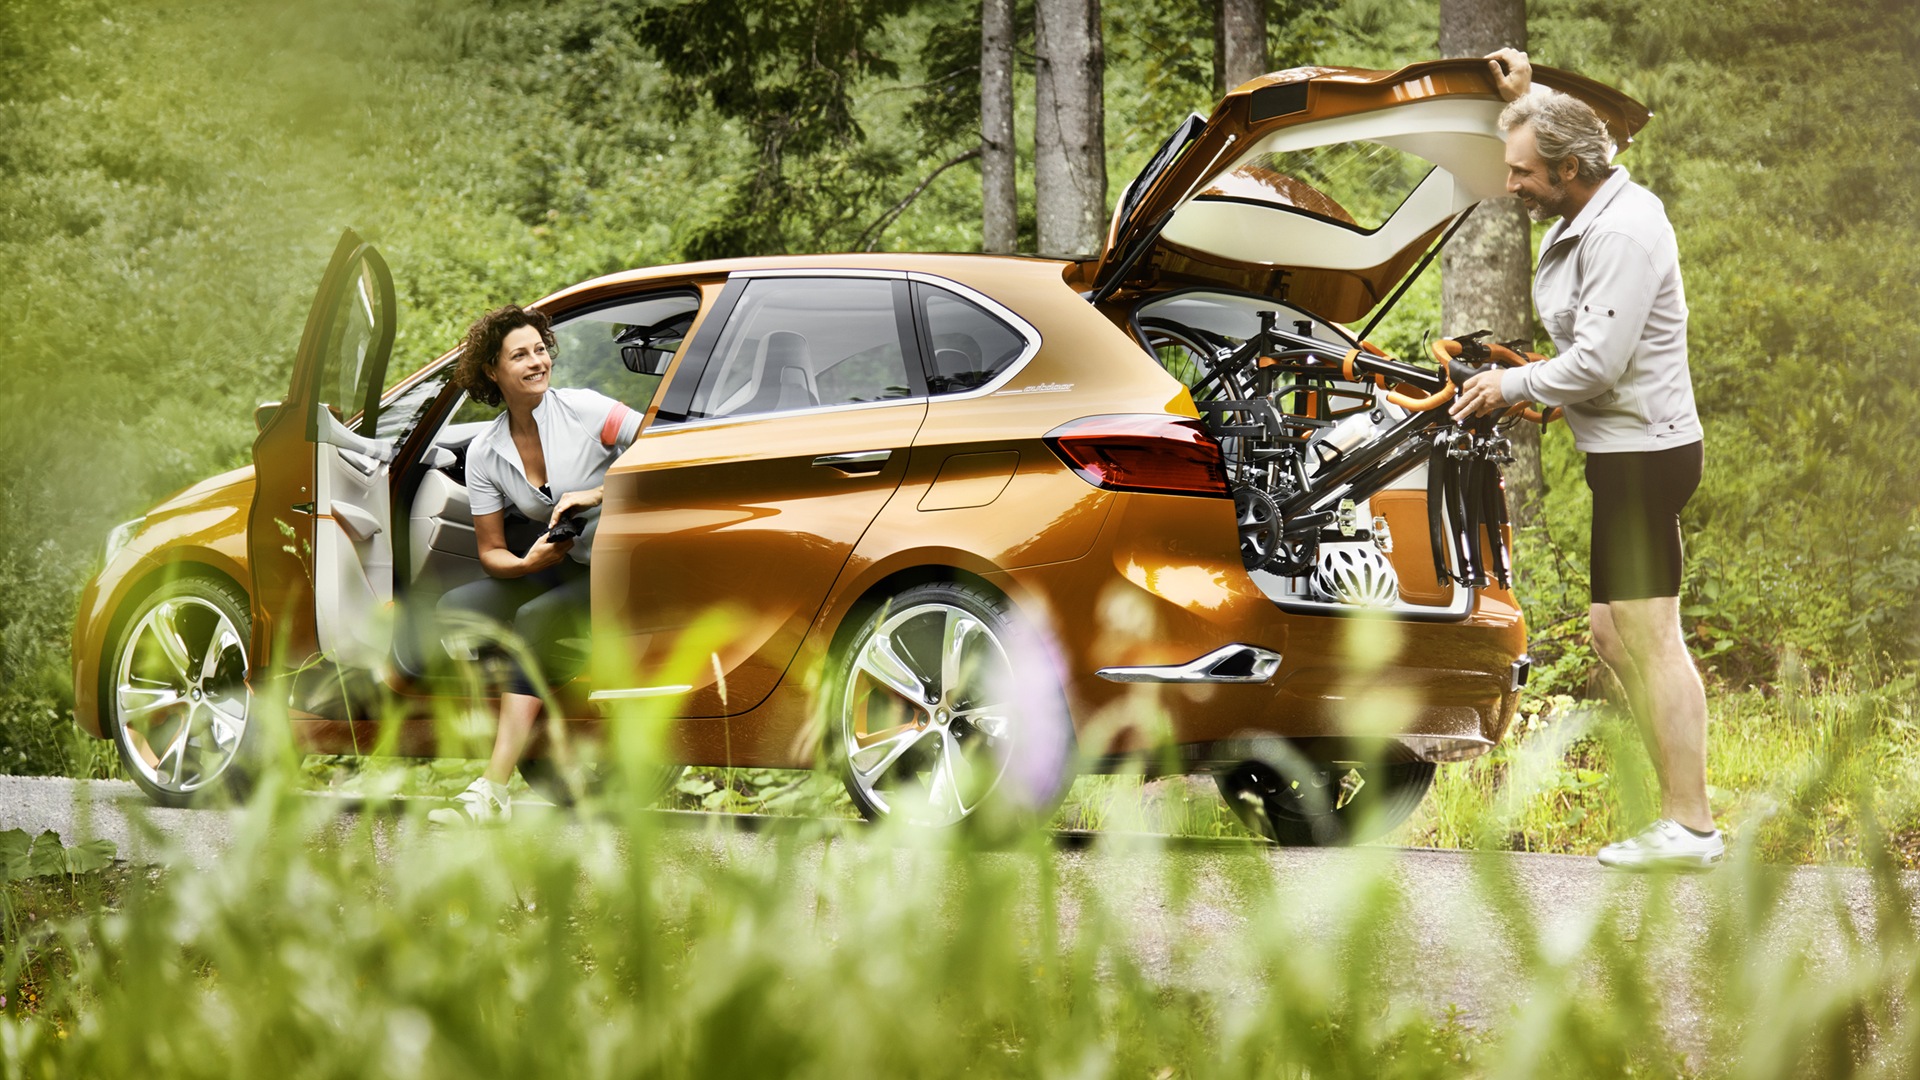 2013 BMW Concept activos Tourer fondos de pantalla de alta definición #9 - 1920x1080